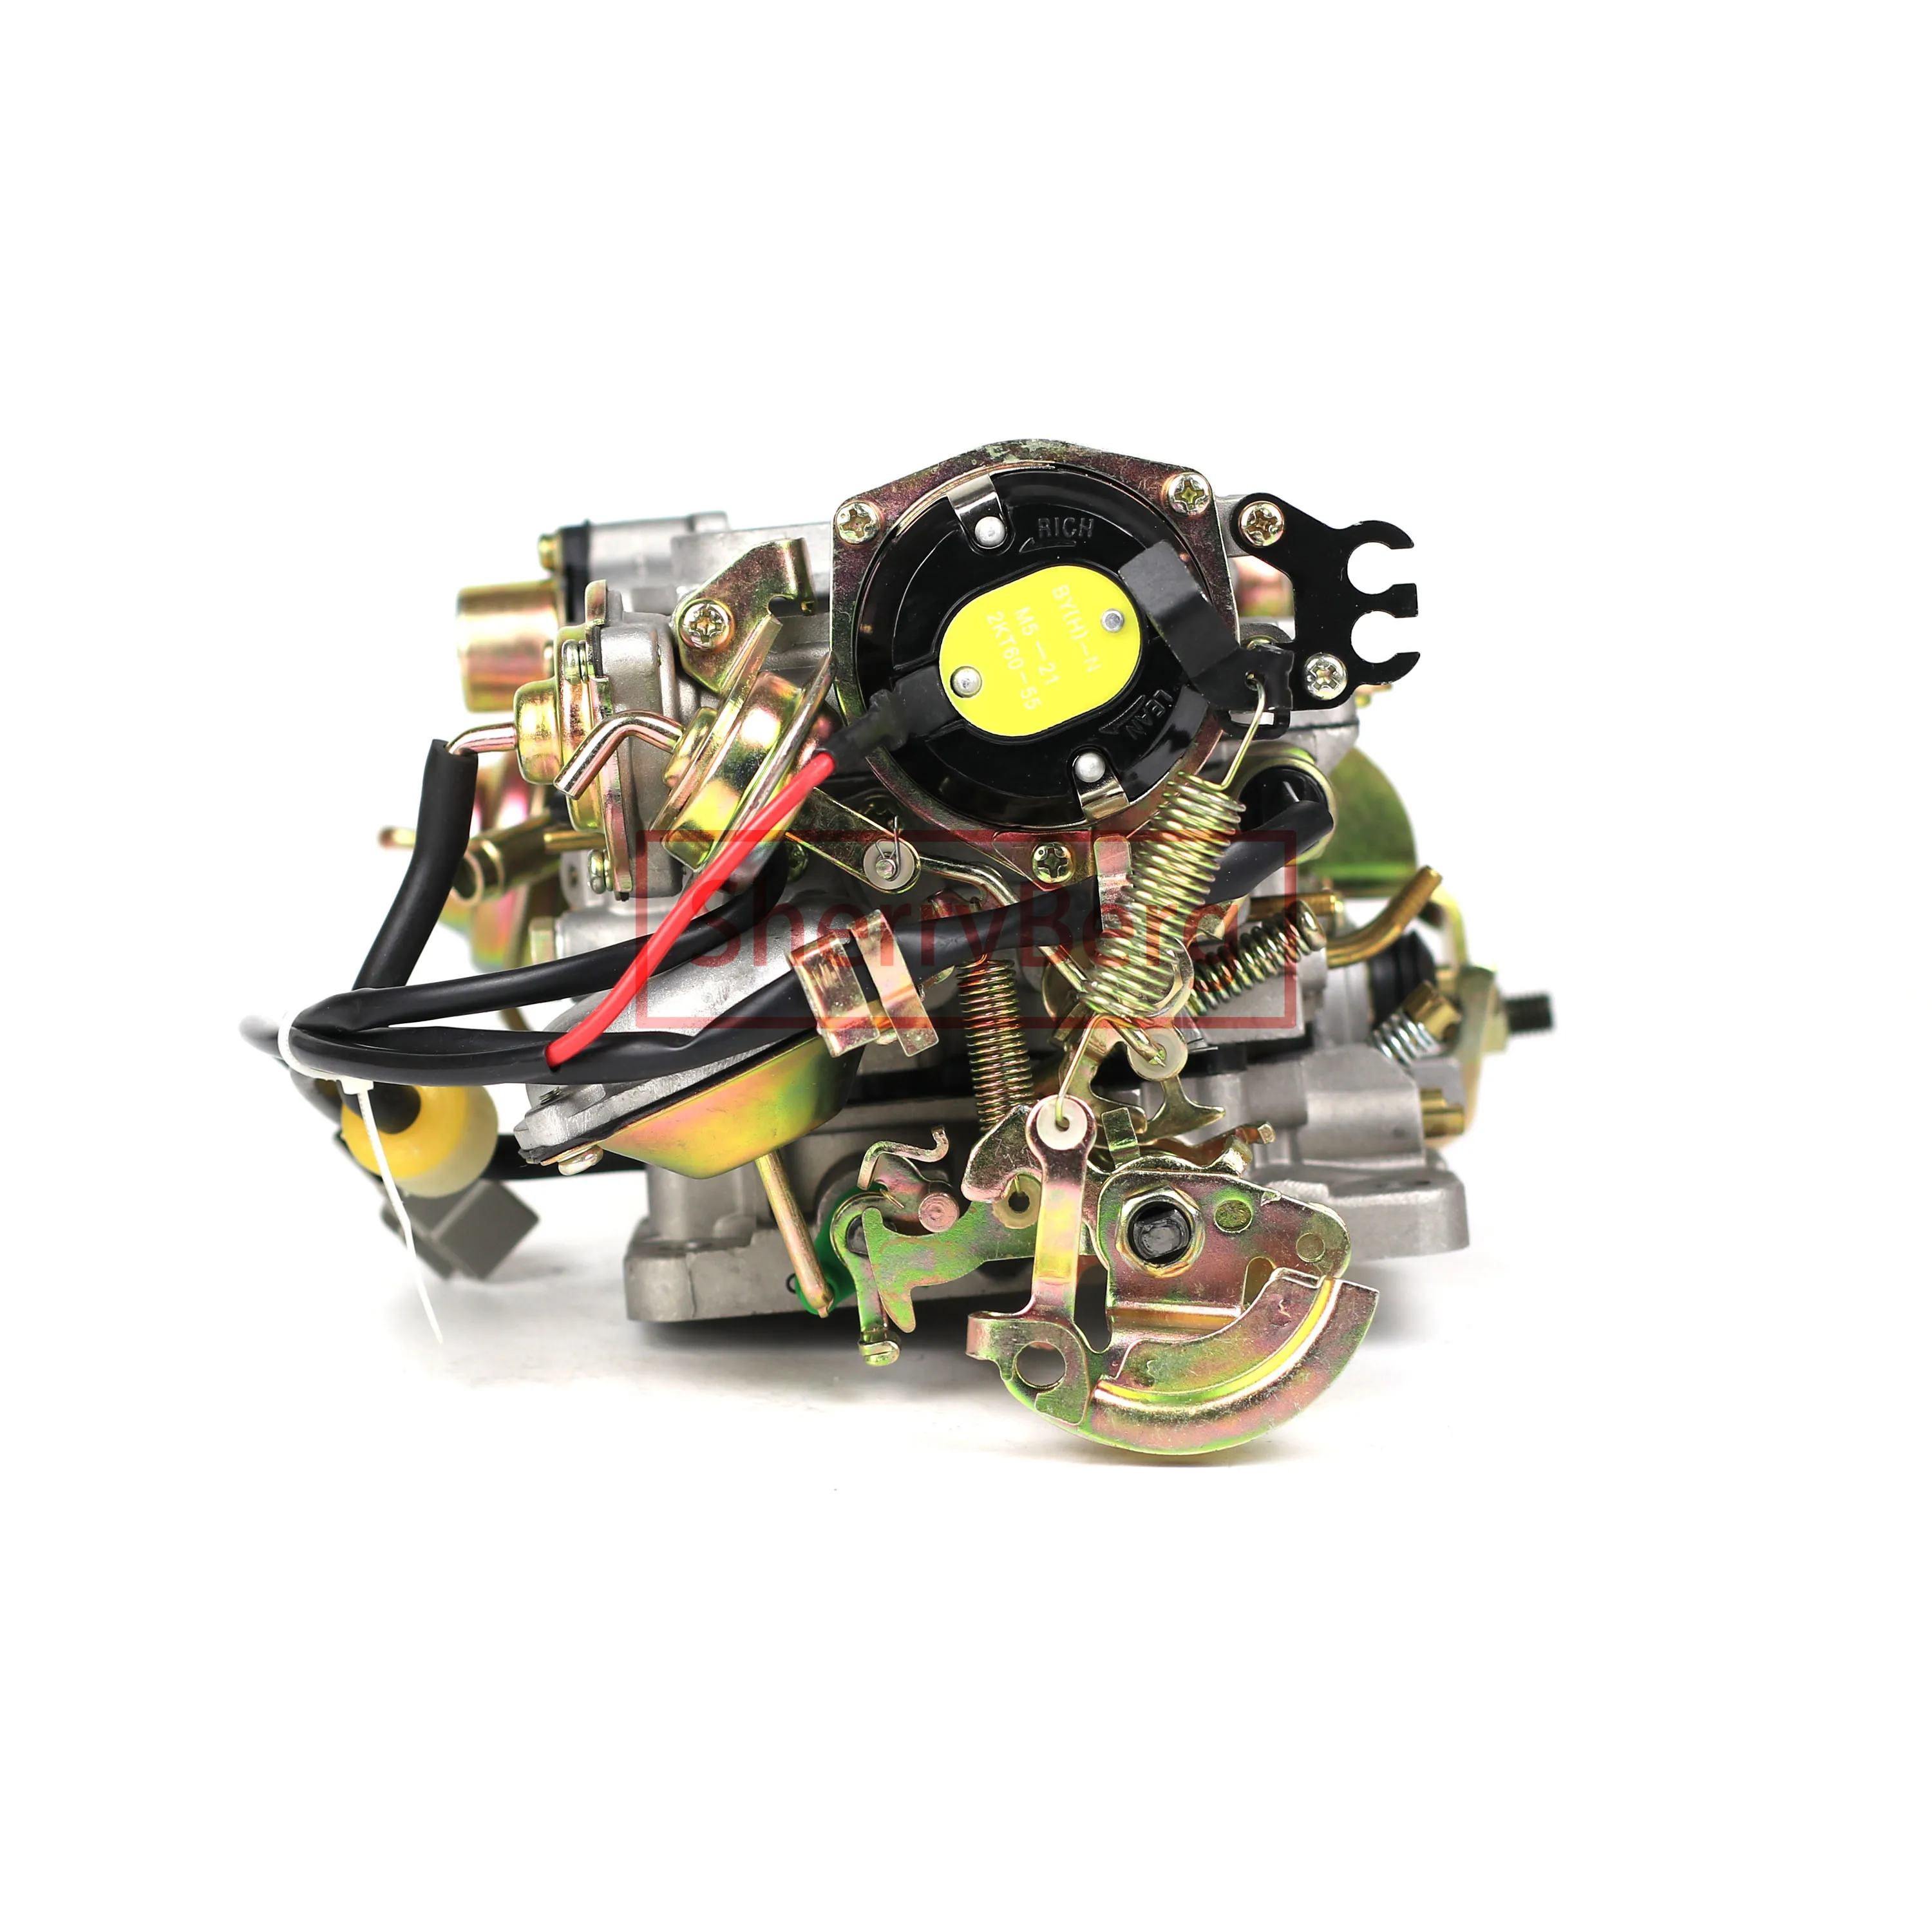 SherryBerg Carburador Carb Carburettor for Toyota 3rz Engine OEM 21100-75101 CARBURETOR CARBY UPGRADE 3 RZ Carbrador Vergaser